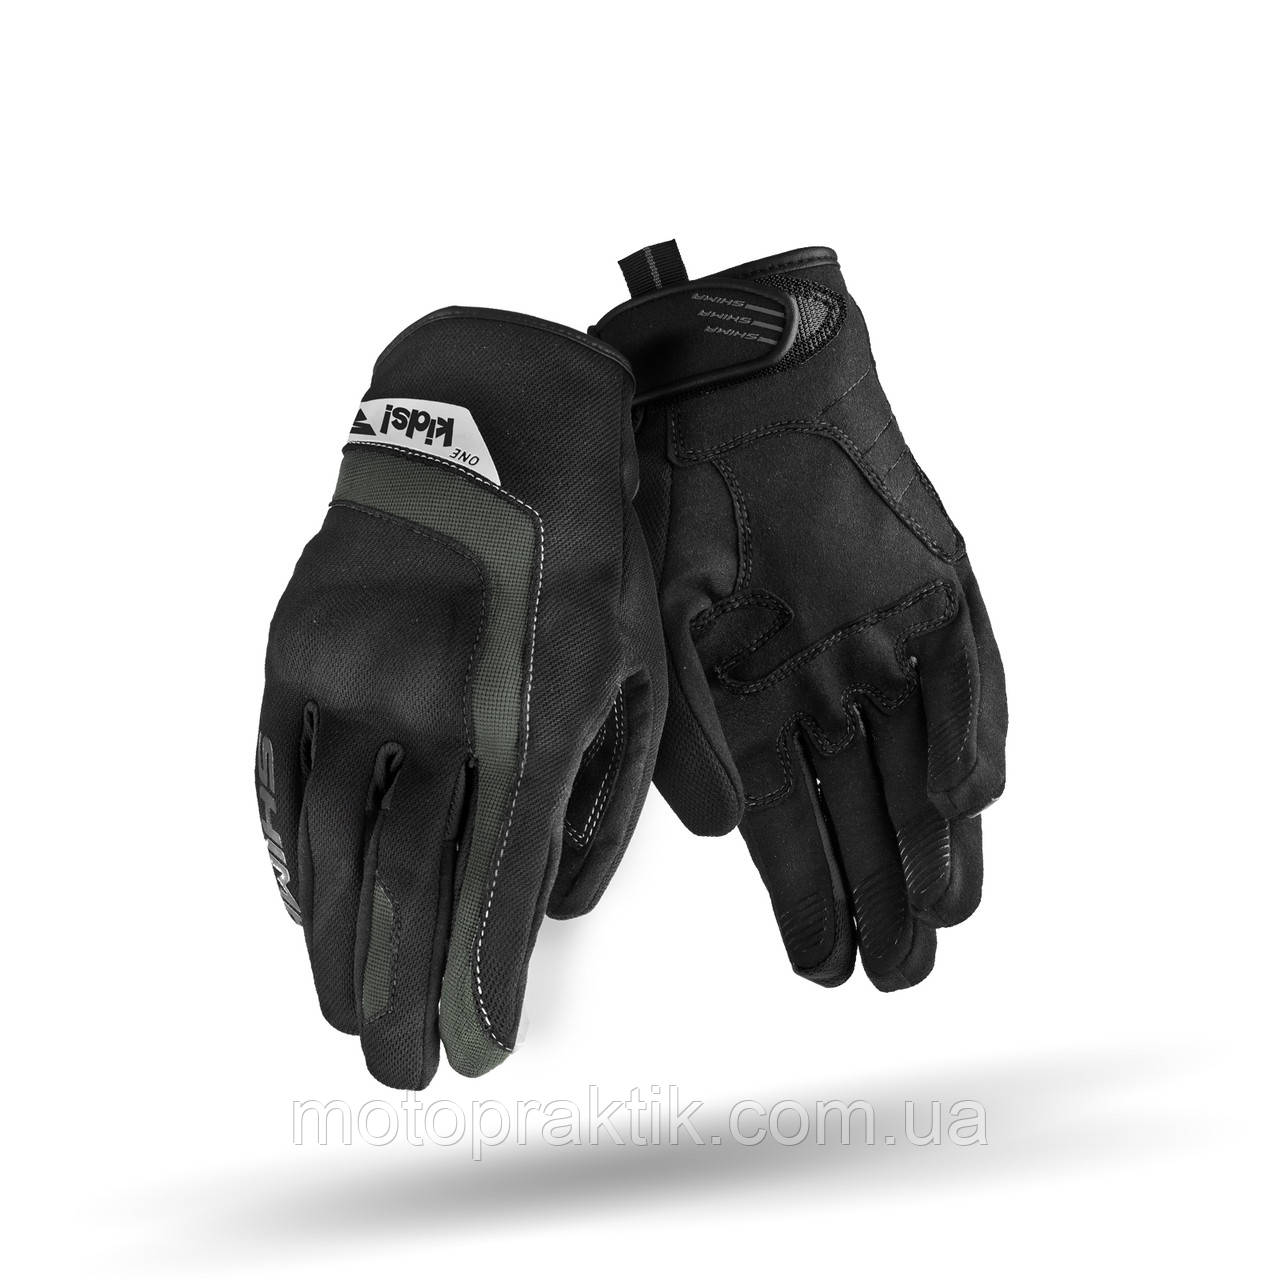 SHIMA ONE KIDS Gloves Black/Grey, S Моторукавички дитячі літні із захистом